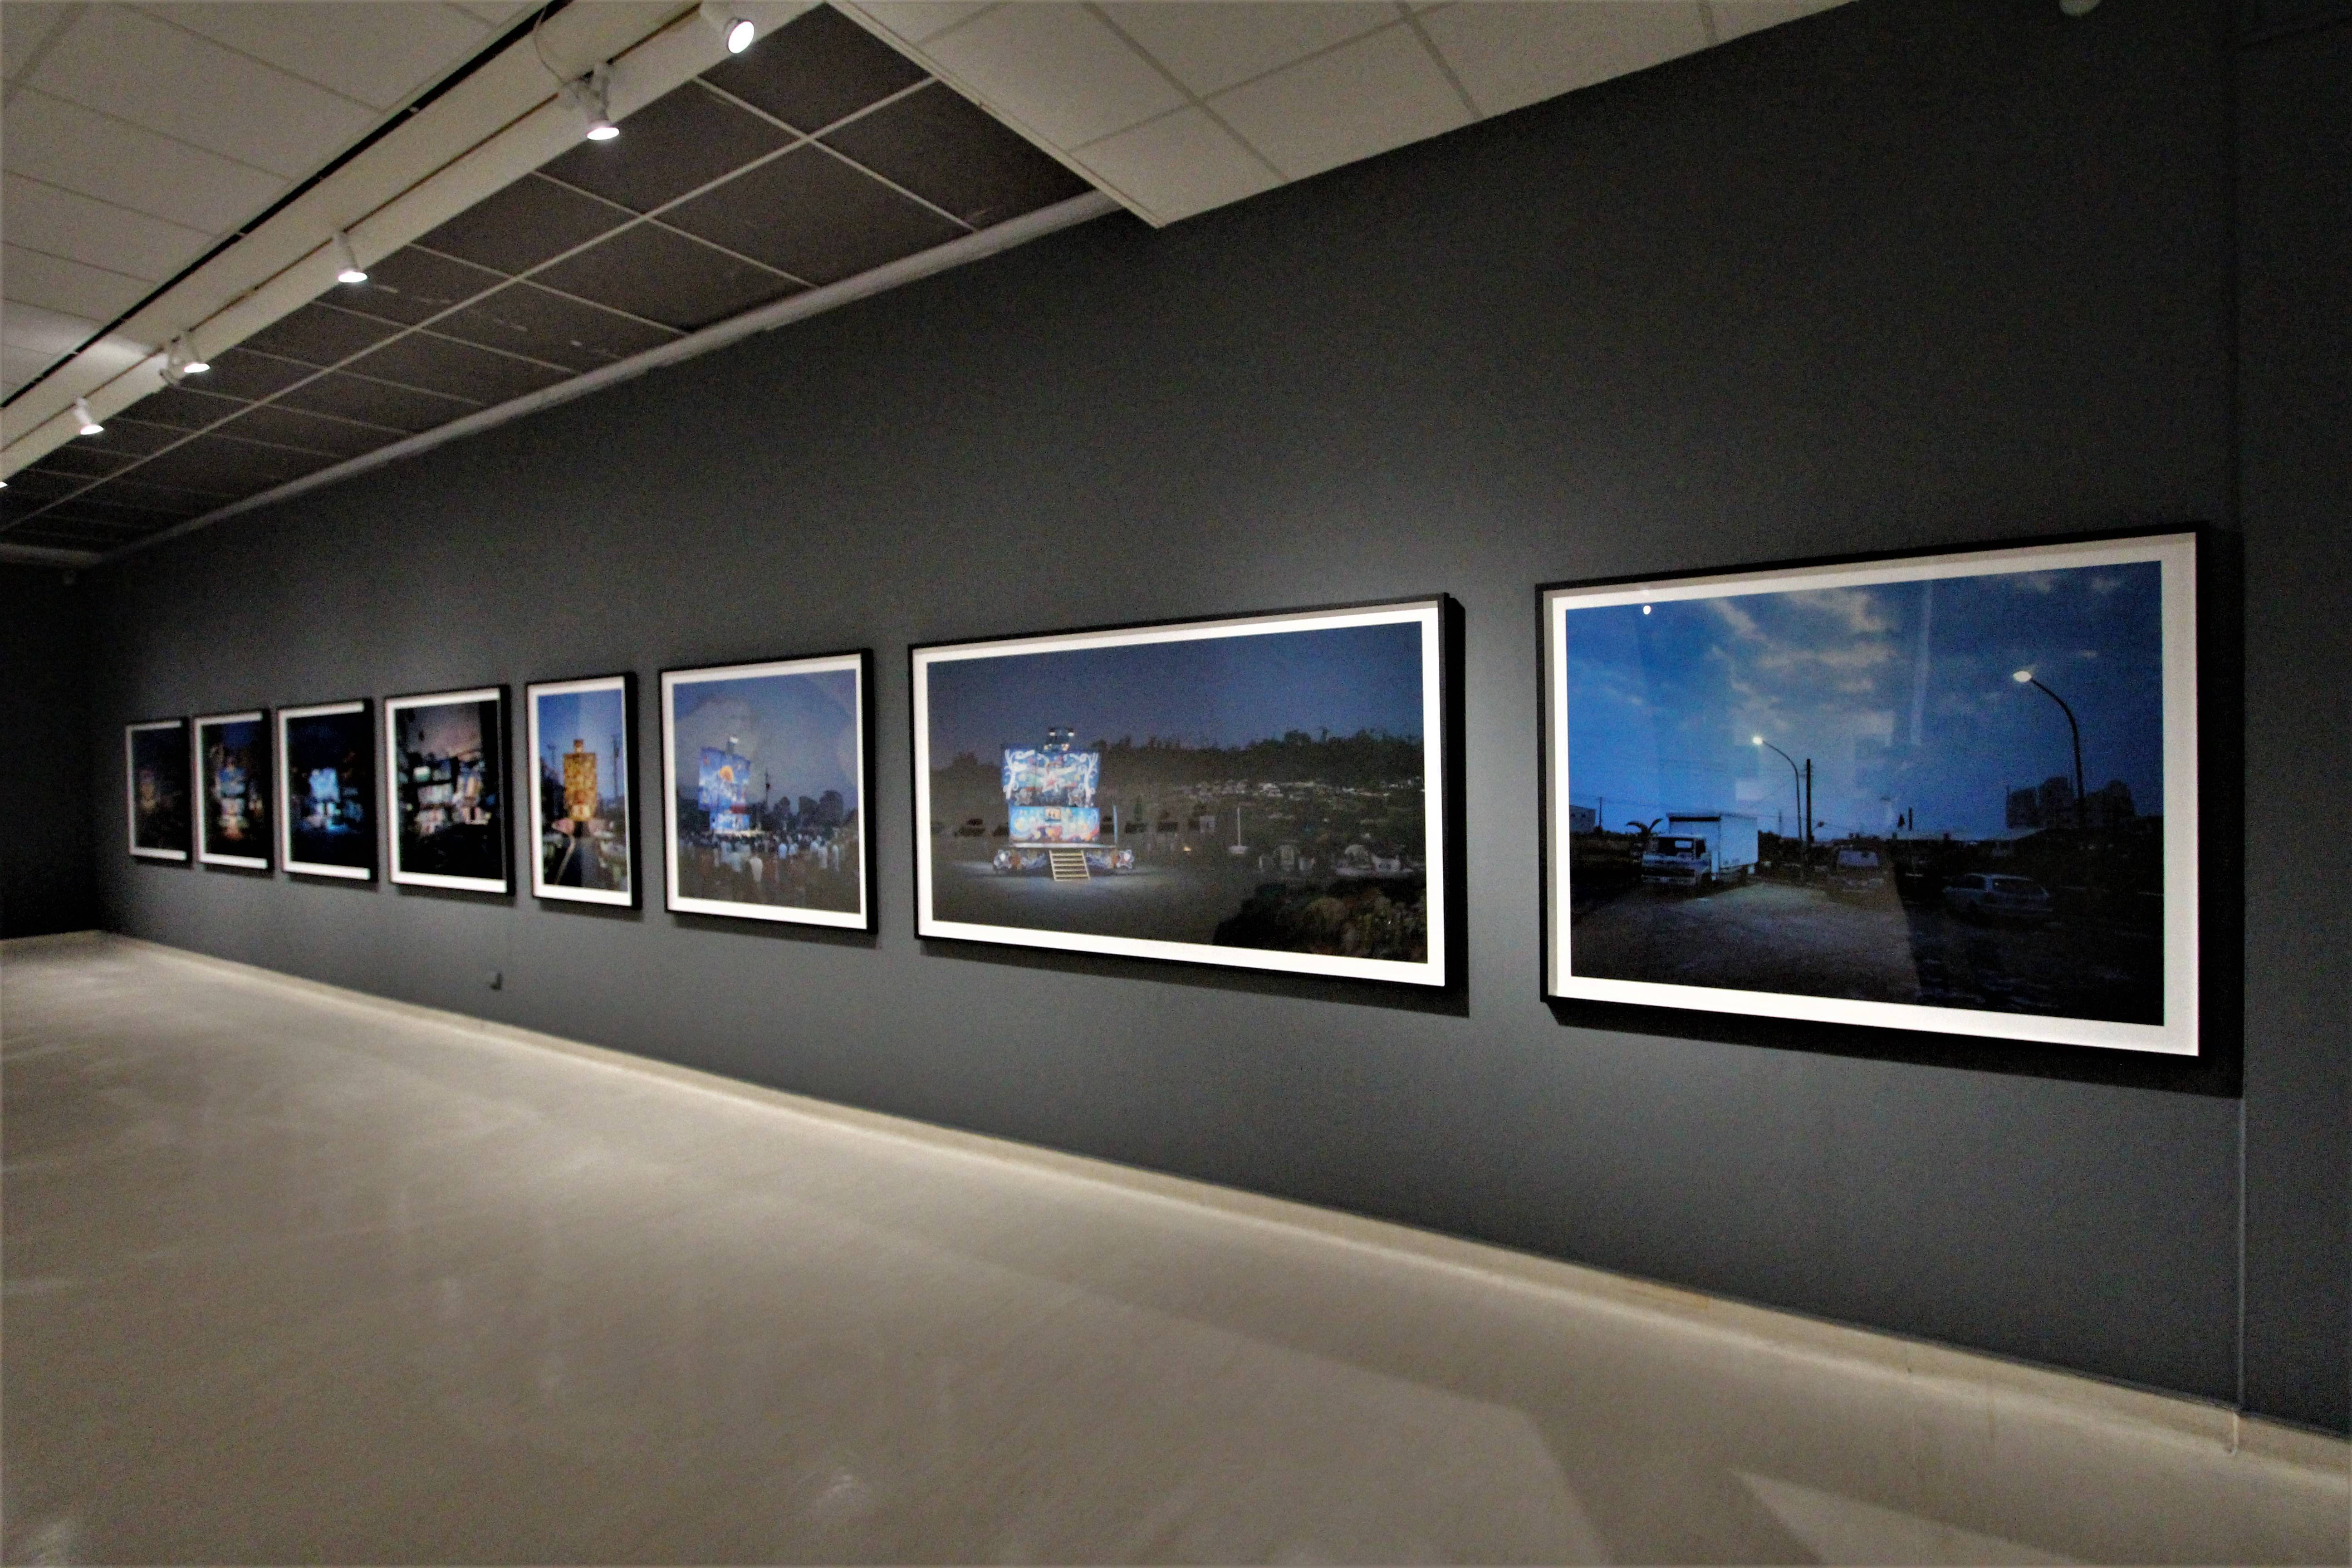 高雄市立美術館 台韓聯合特展 《移動與遷徙 - 從地方到他方的故事》